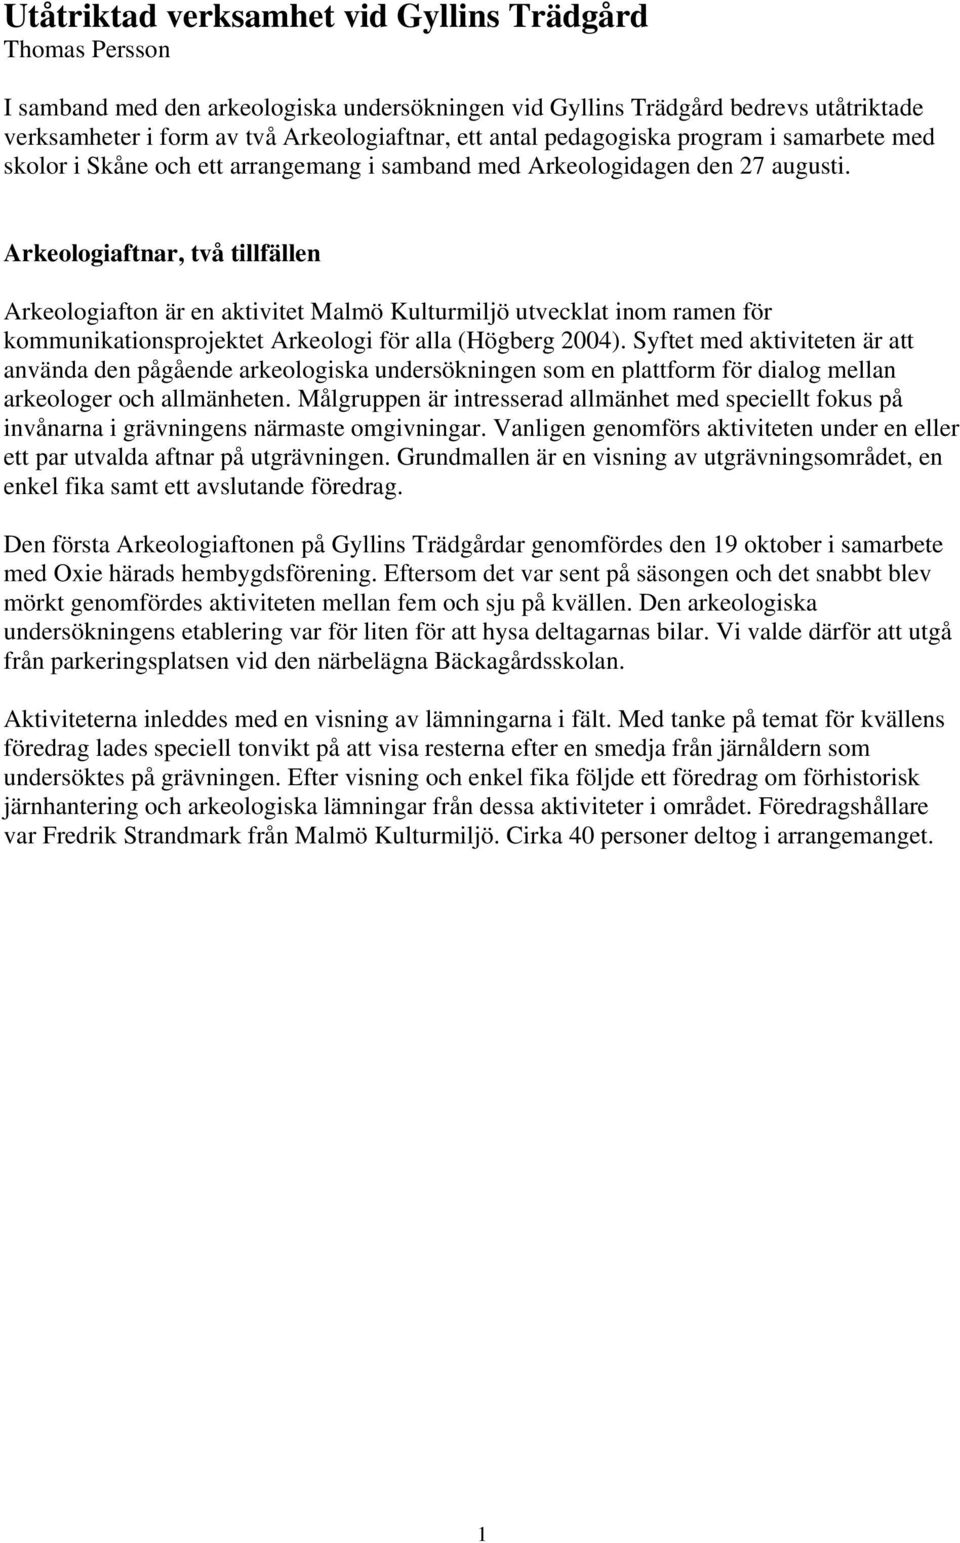 Arkeologiaftnar, två tillfällen Arkeologiafton är en aktivitet Malmö Kulturmiljö utvecklat inom ramen för kommunikationsprojektet Arkeologi för alla (Högberg 2004).